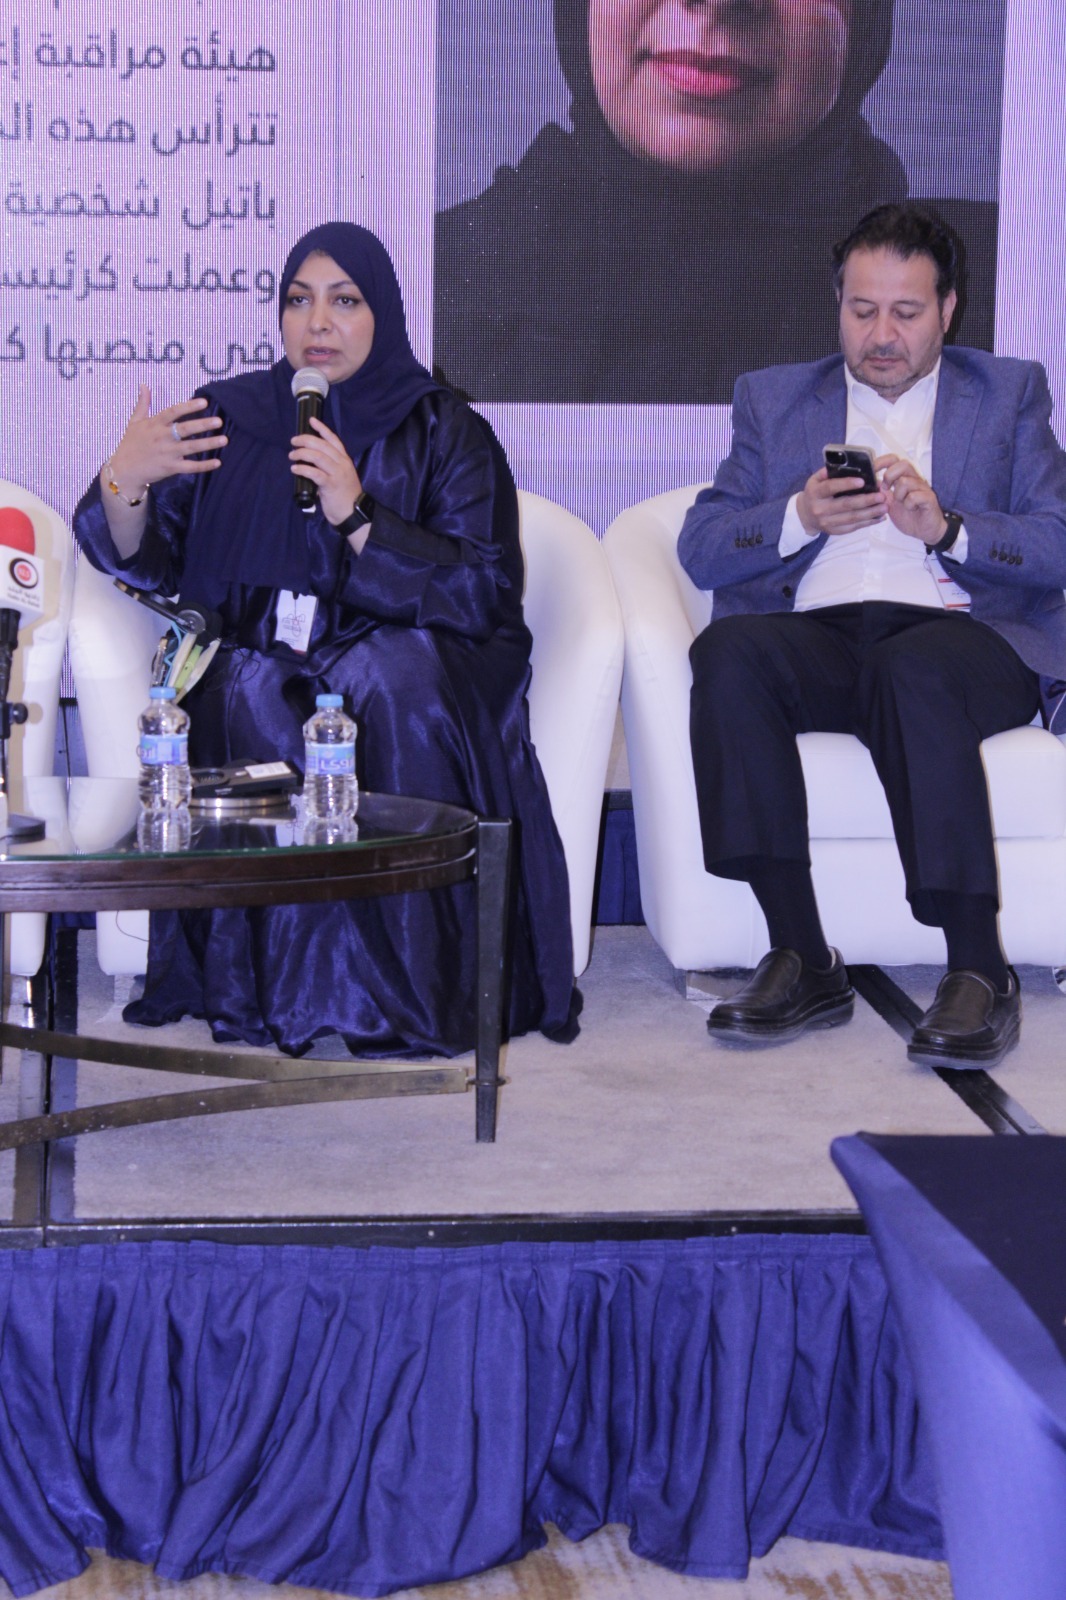 ملتقى همم السنوي يطالب بإعادة النظر في قانون الجرائم الإلكتروني ويدعو إلى حماية حرية التعبير كمتطلب للإصلاح